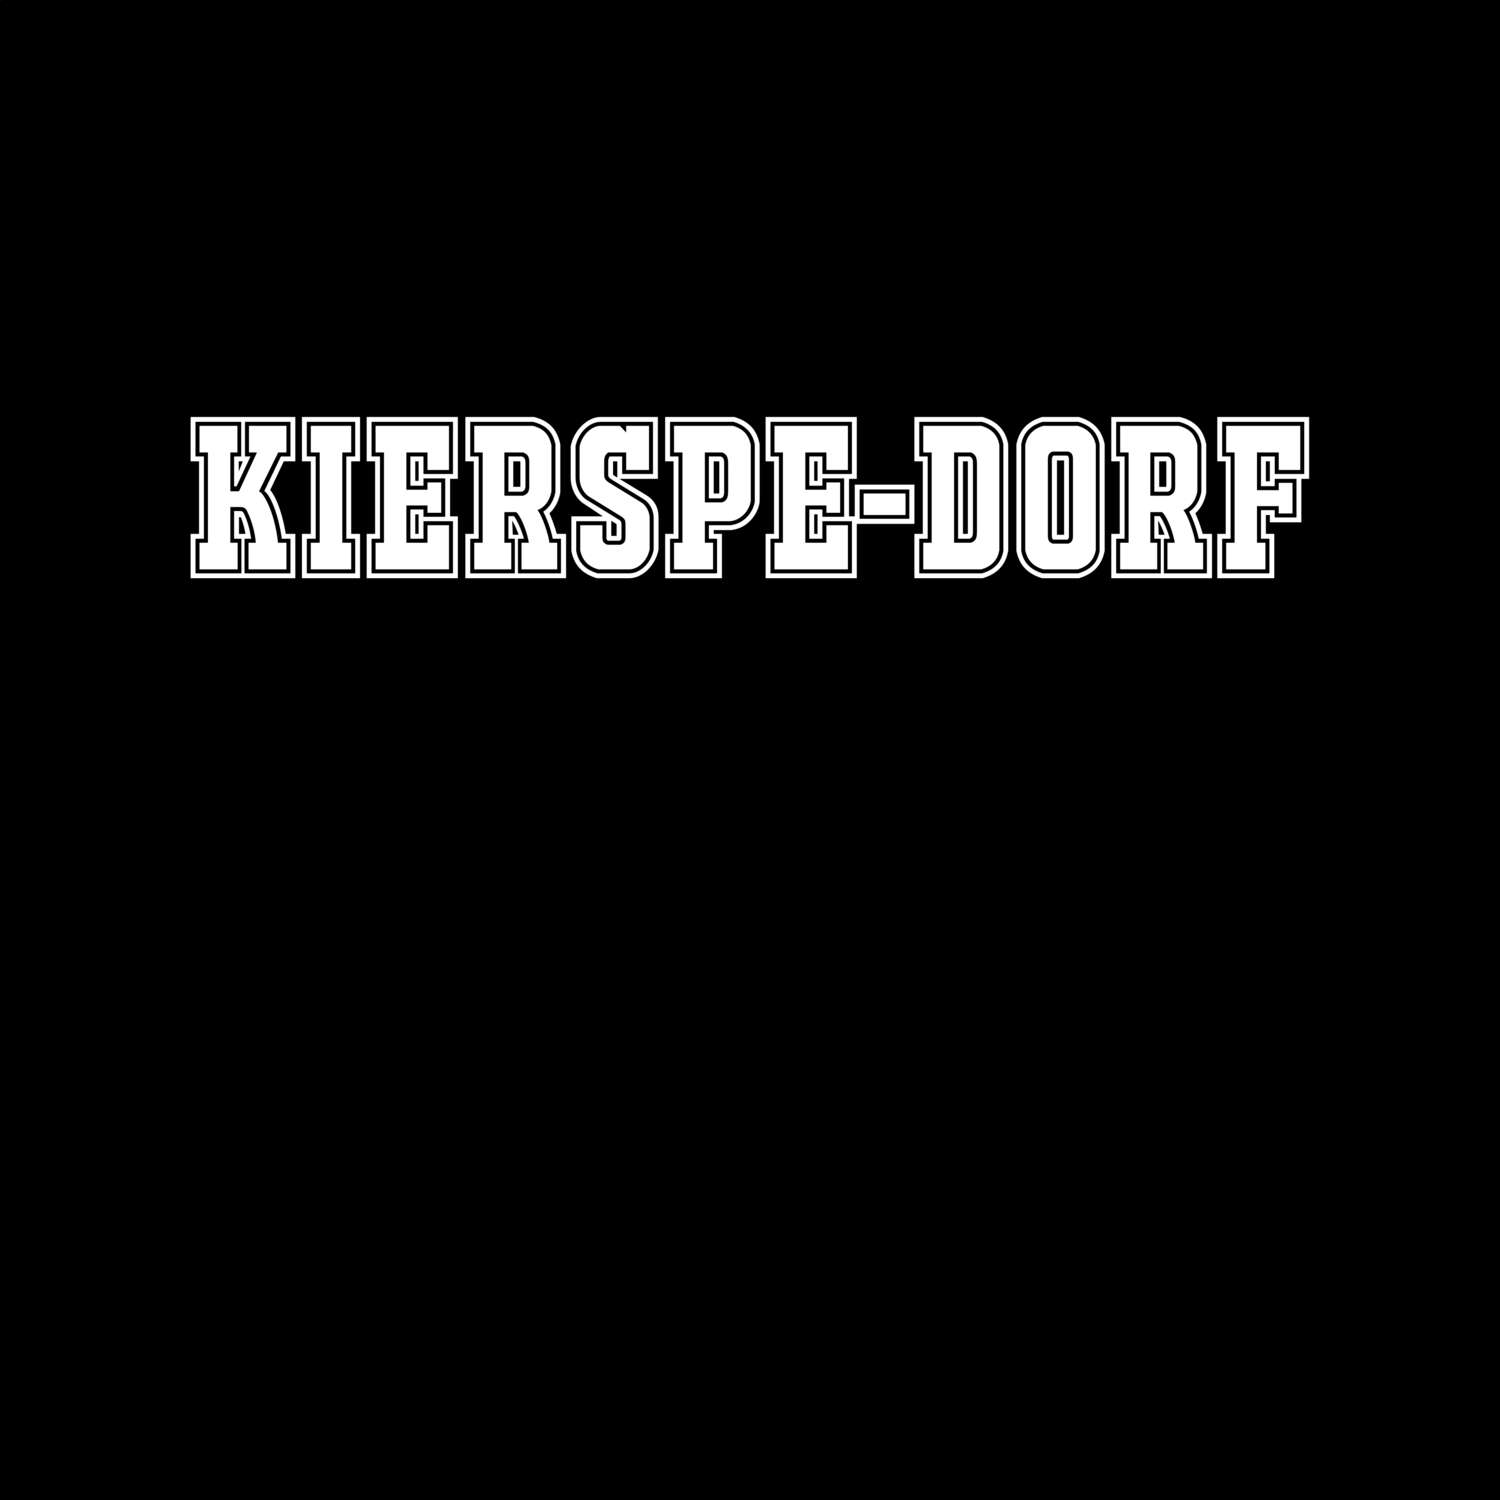 Kierspe-Dorf T-Shirt »Classic«